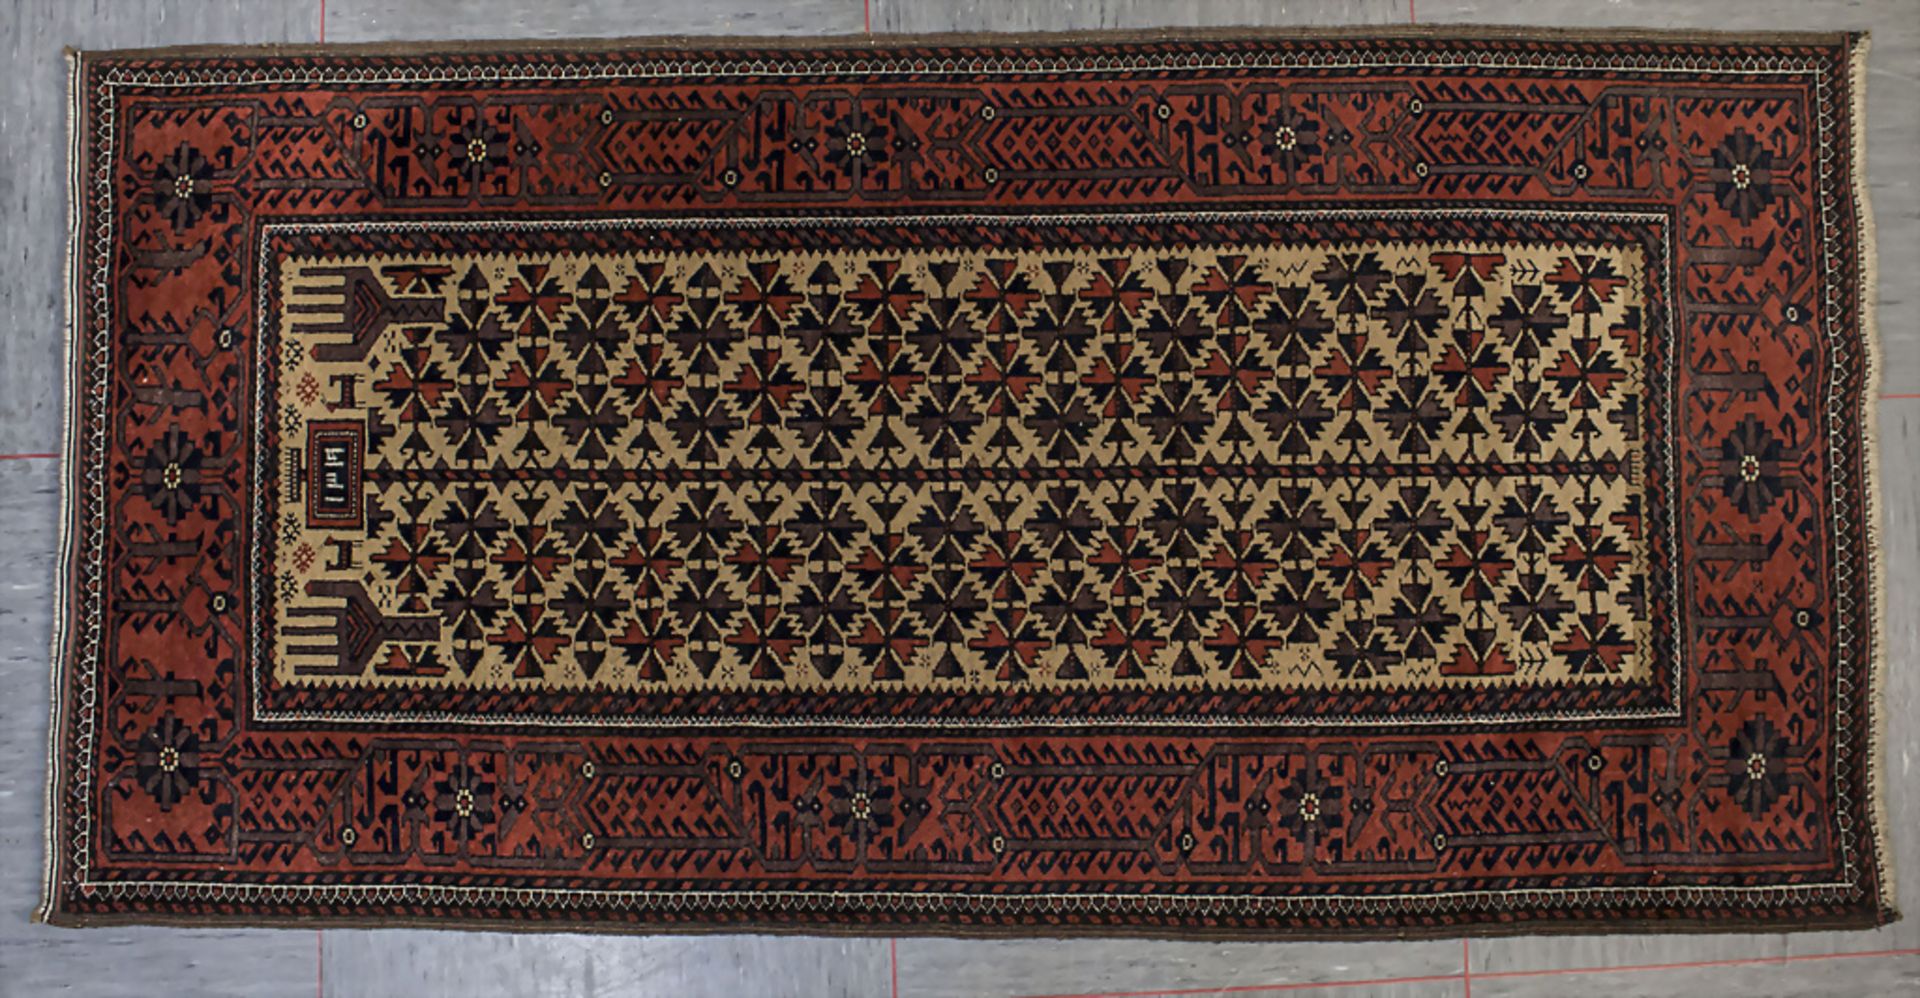 Wandteppich / A wall carpet, 20. Jh.